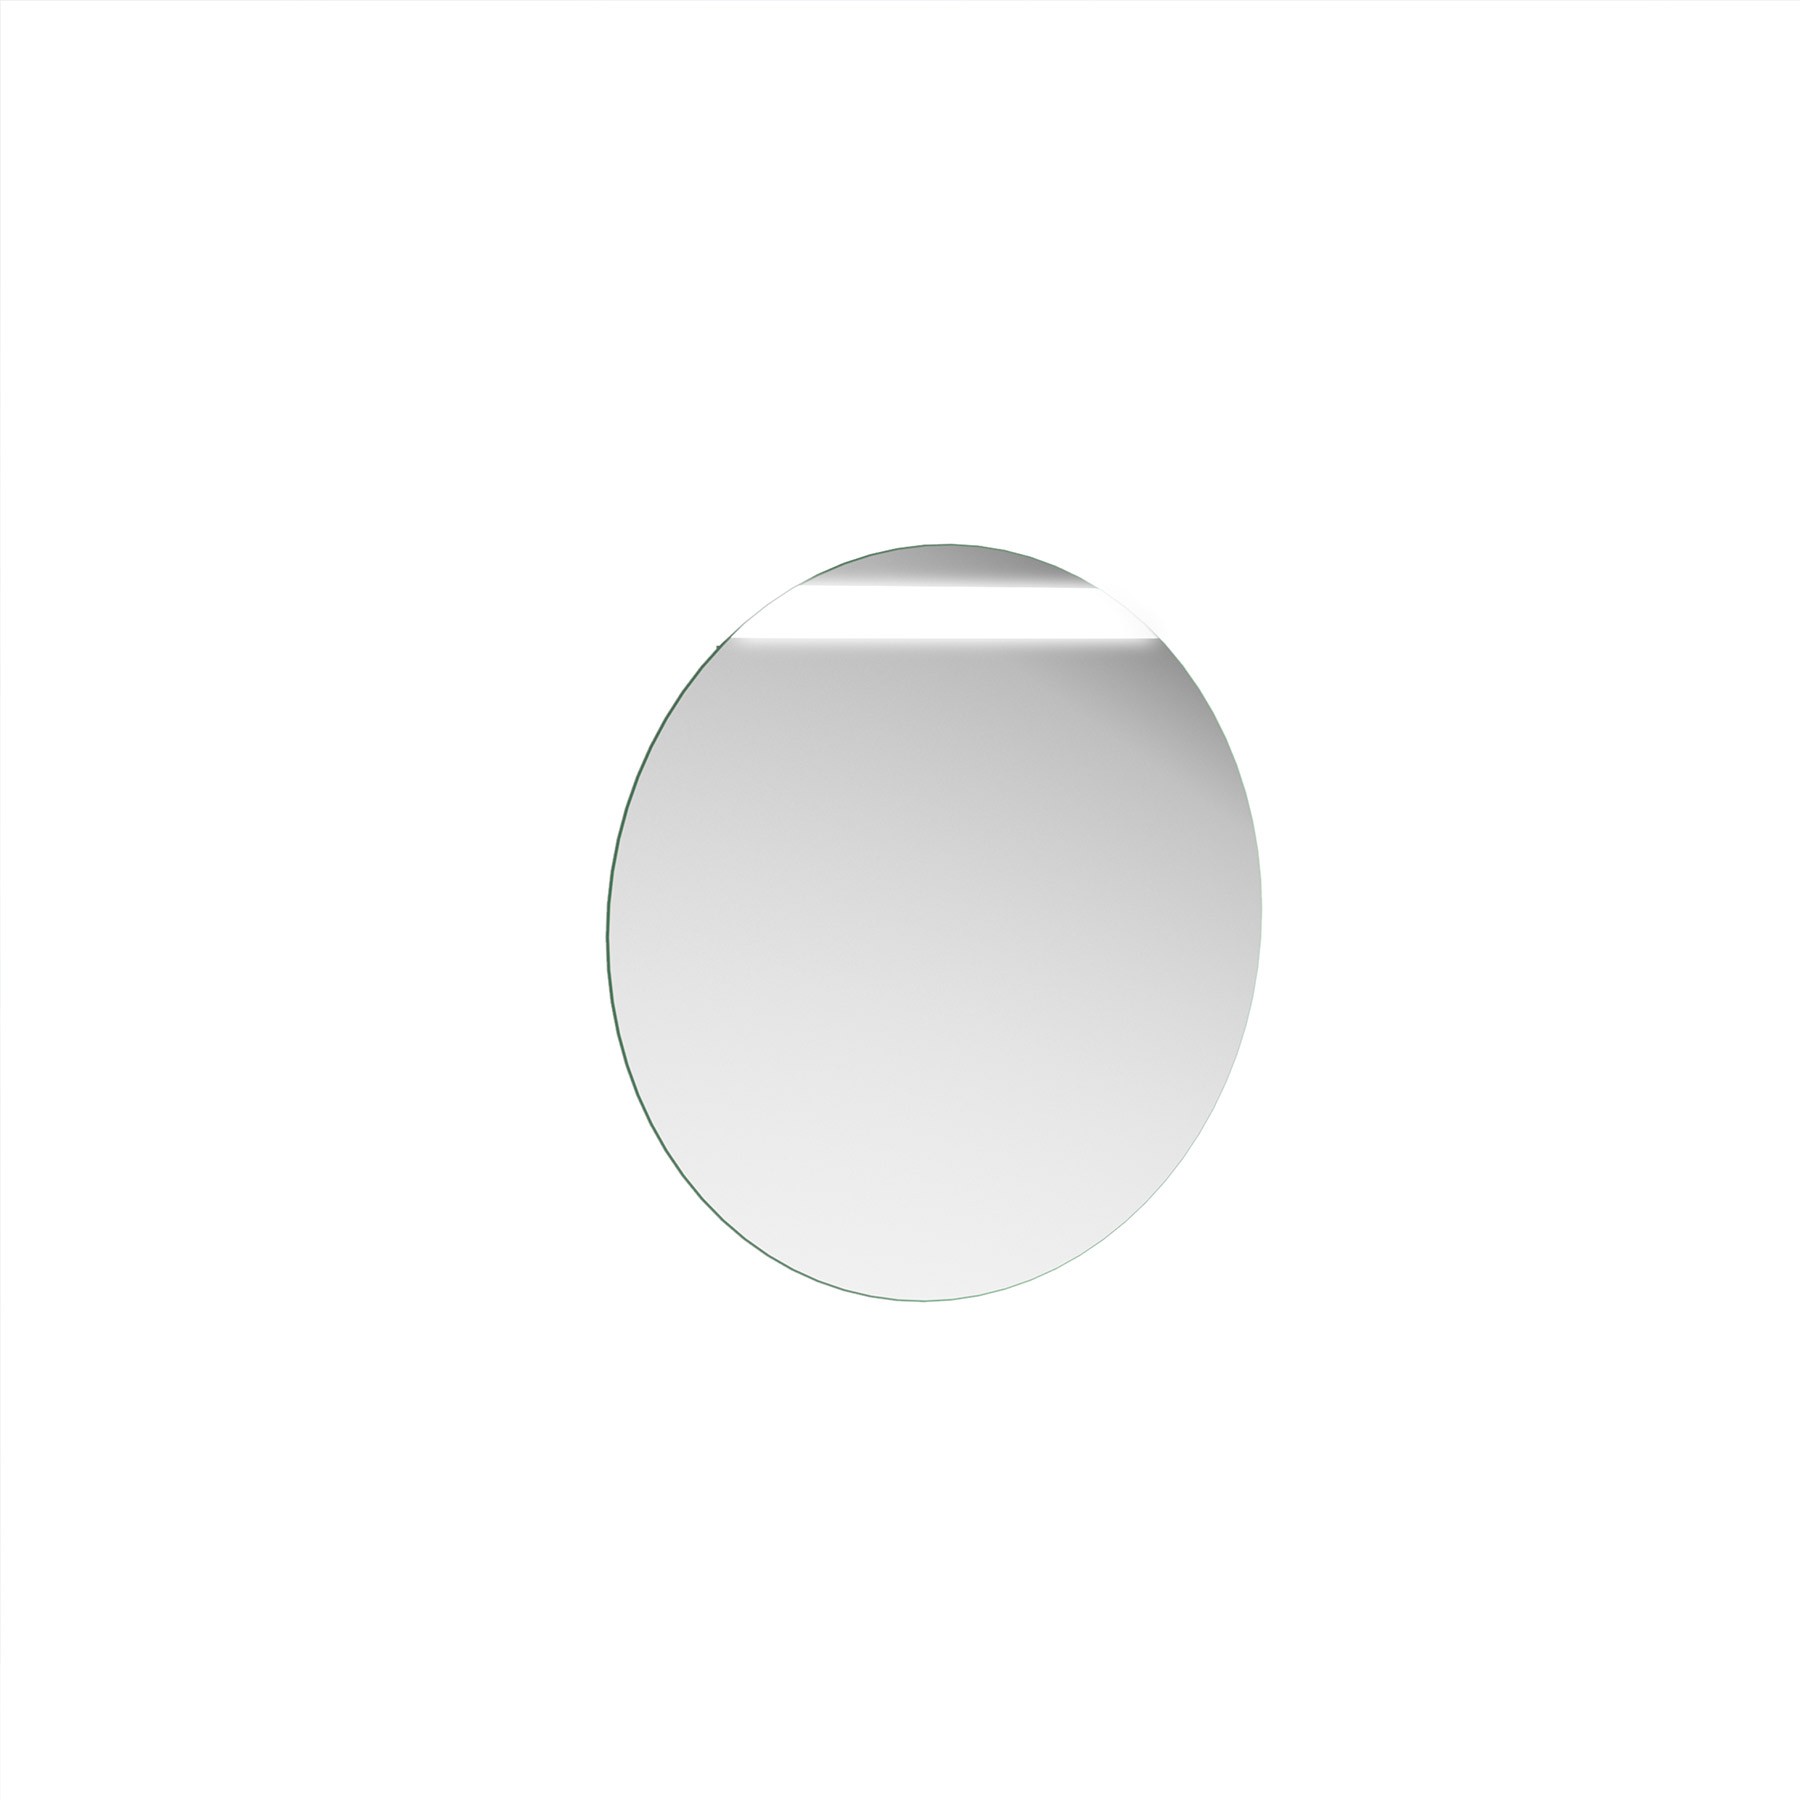 Miroir de salle de bains Gamme PRO SALGAR ROUND 800 circulaire avec bande lumineuse luminaire led (5 W) IP44 d 800 mm - Réf : 24547